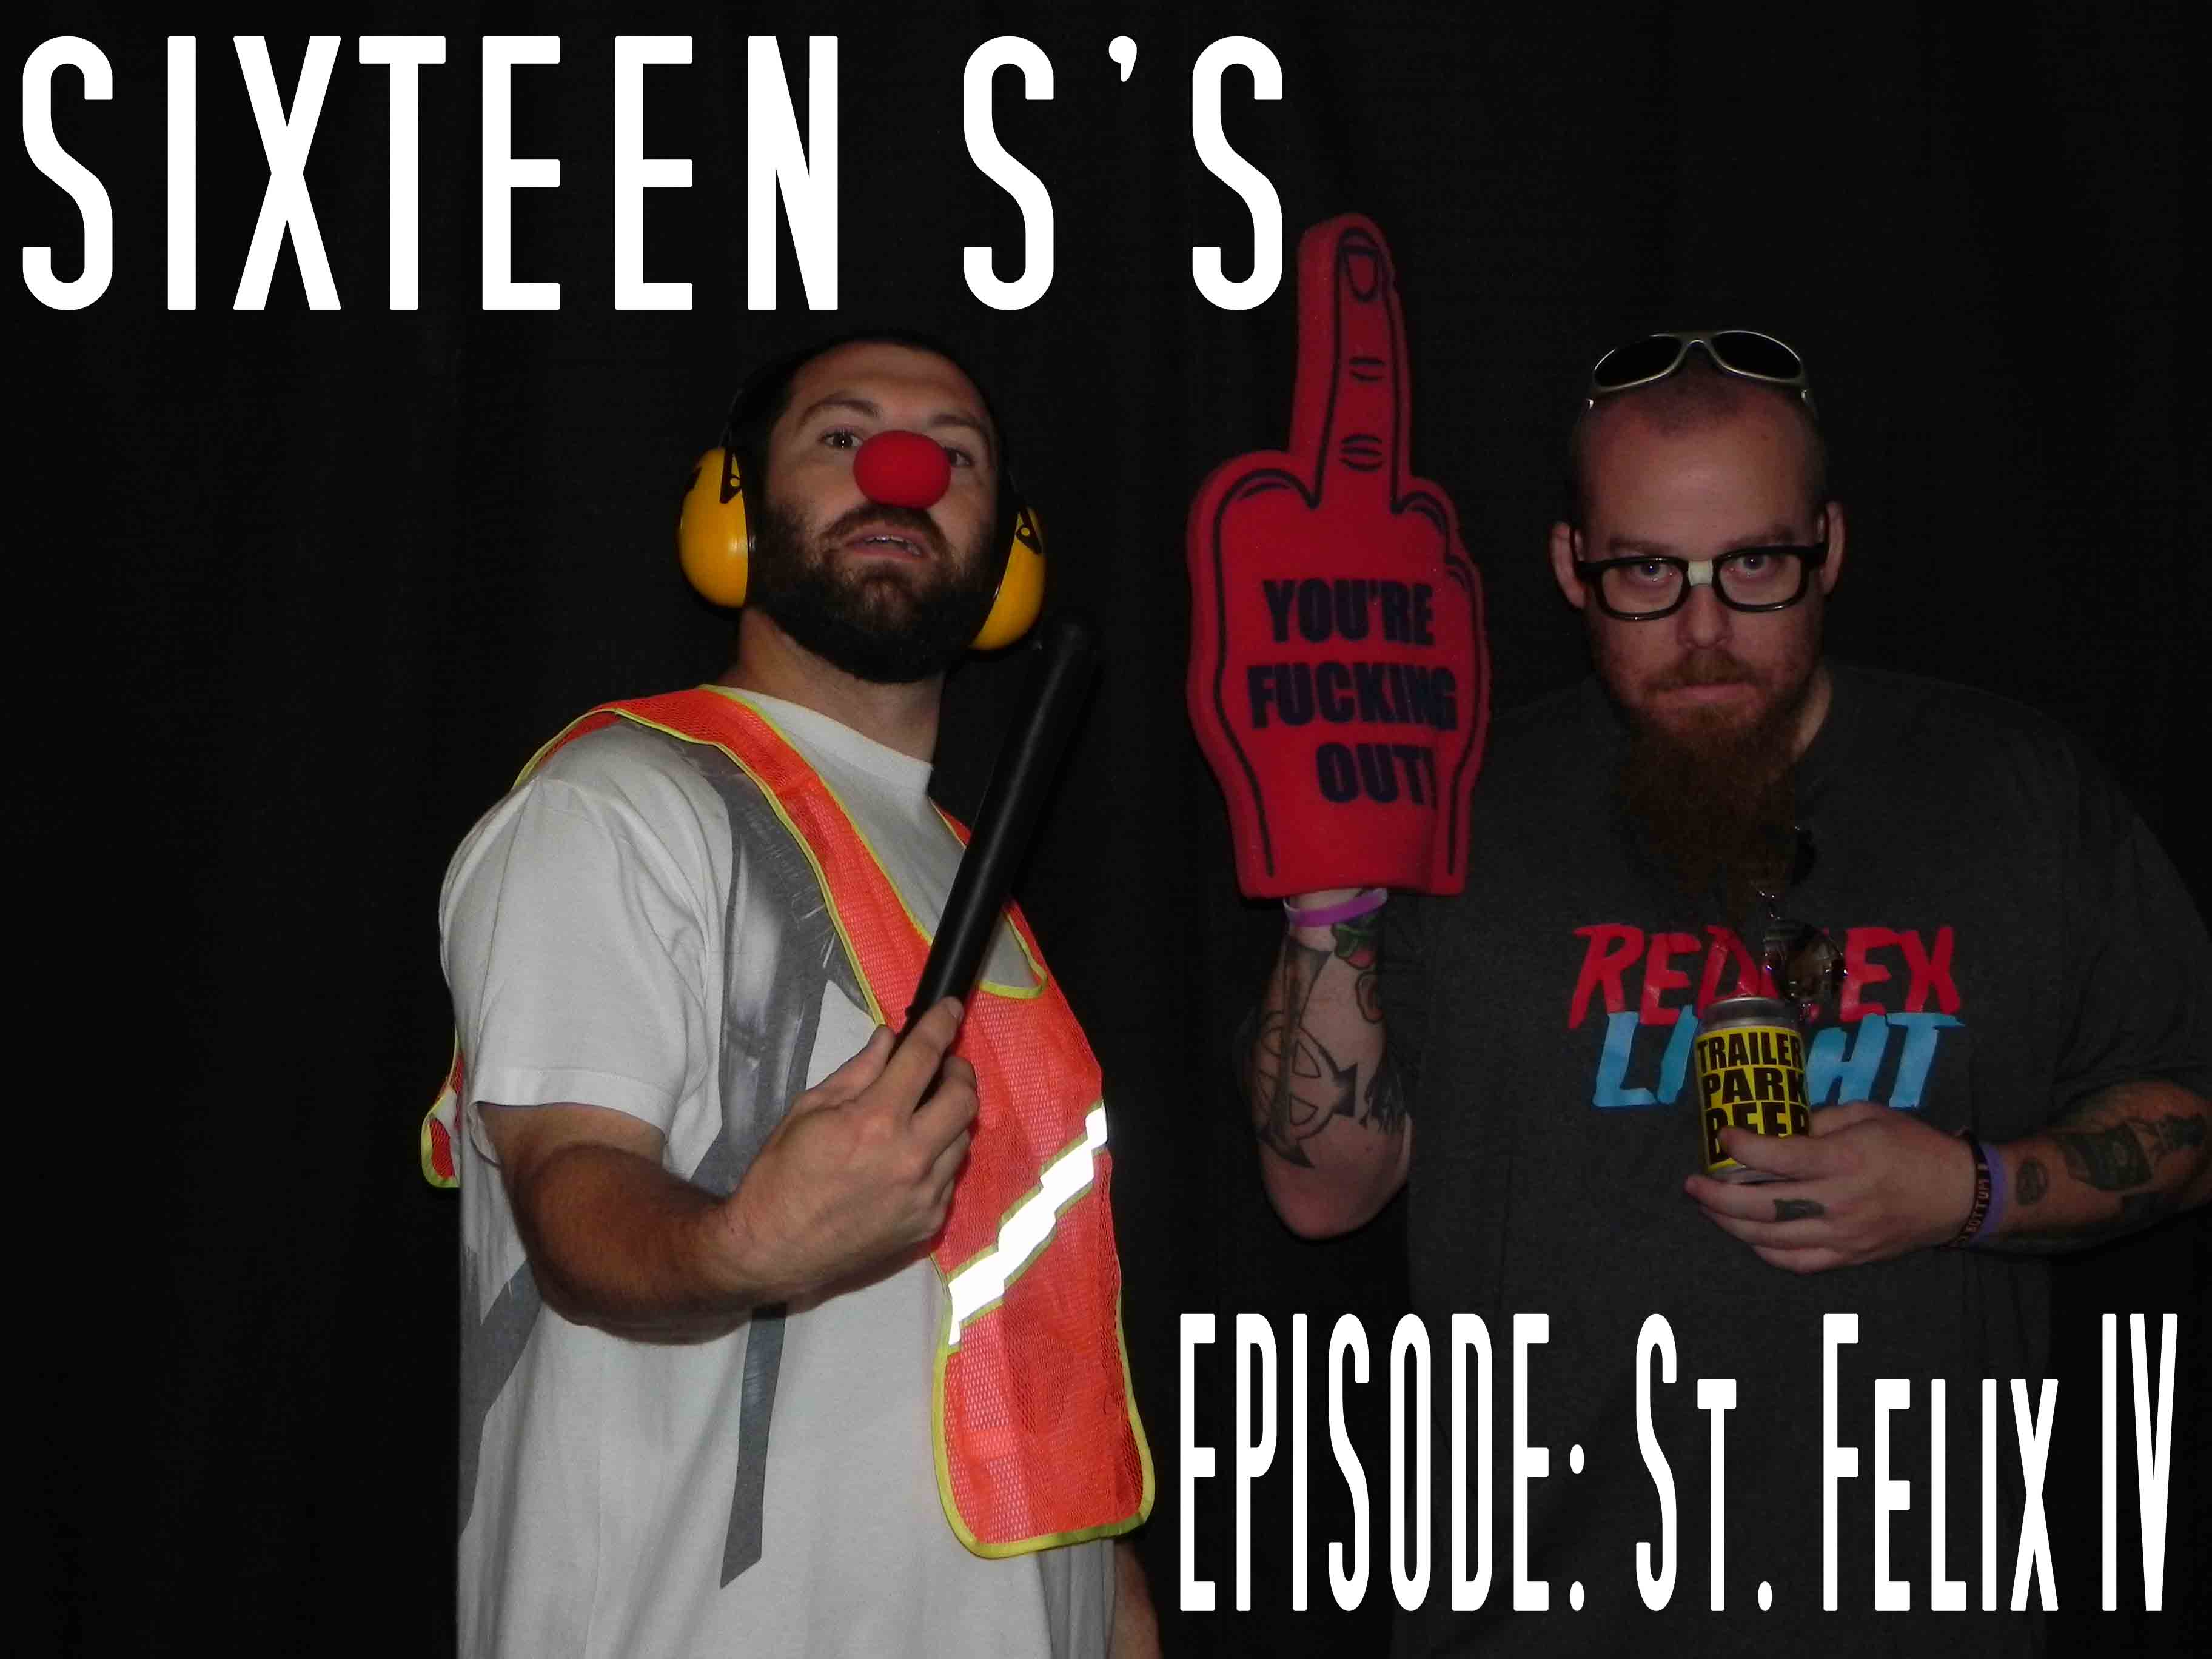 Sixteen S’s (Episode St. Felix IV)